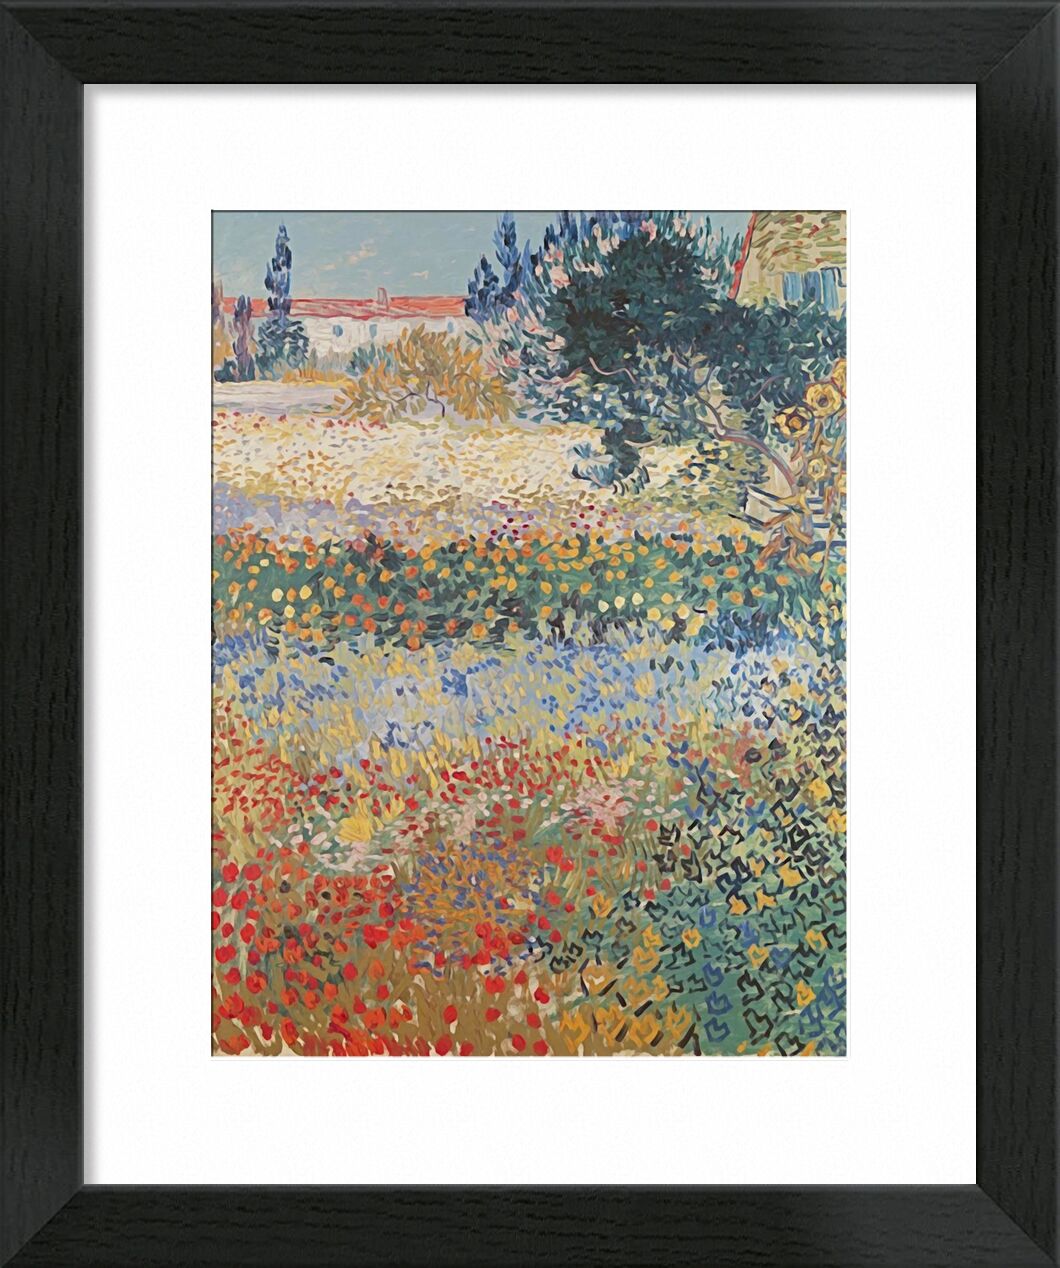 Garden in Bloom Arles - Van Gogh von Bildende Kunst, Prodi Art, Garten, Blumen, Landschaft, Malerei, Van gogh